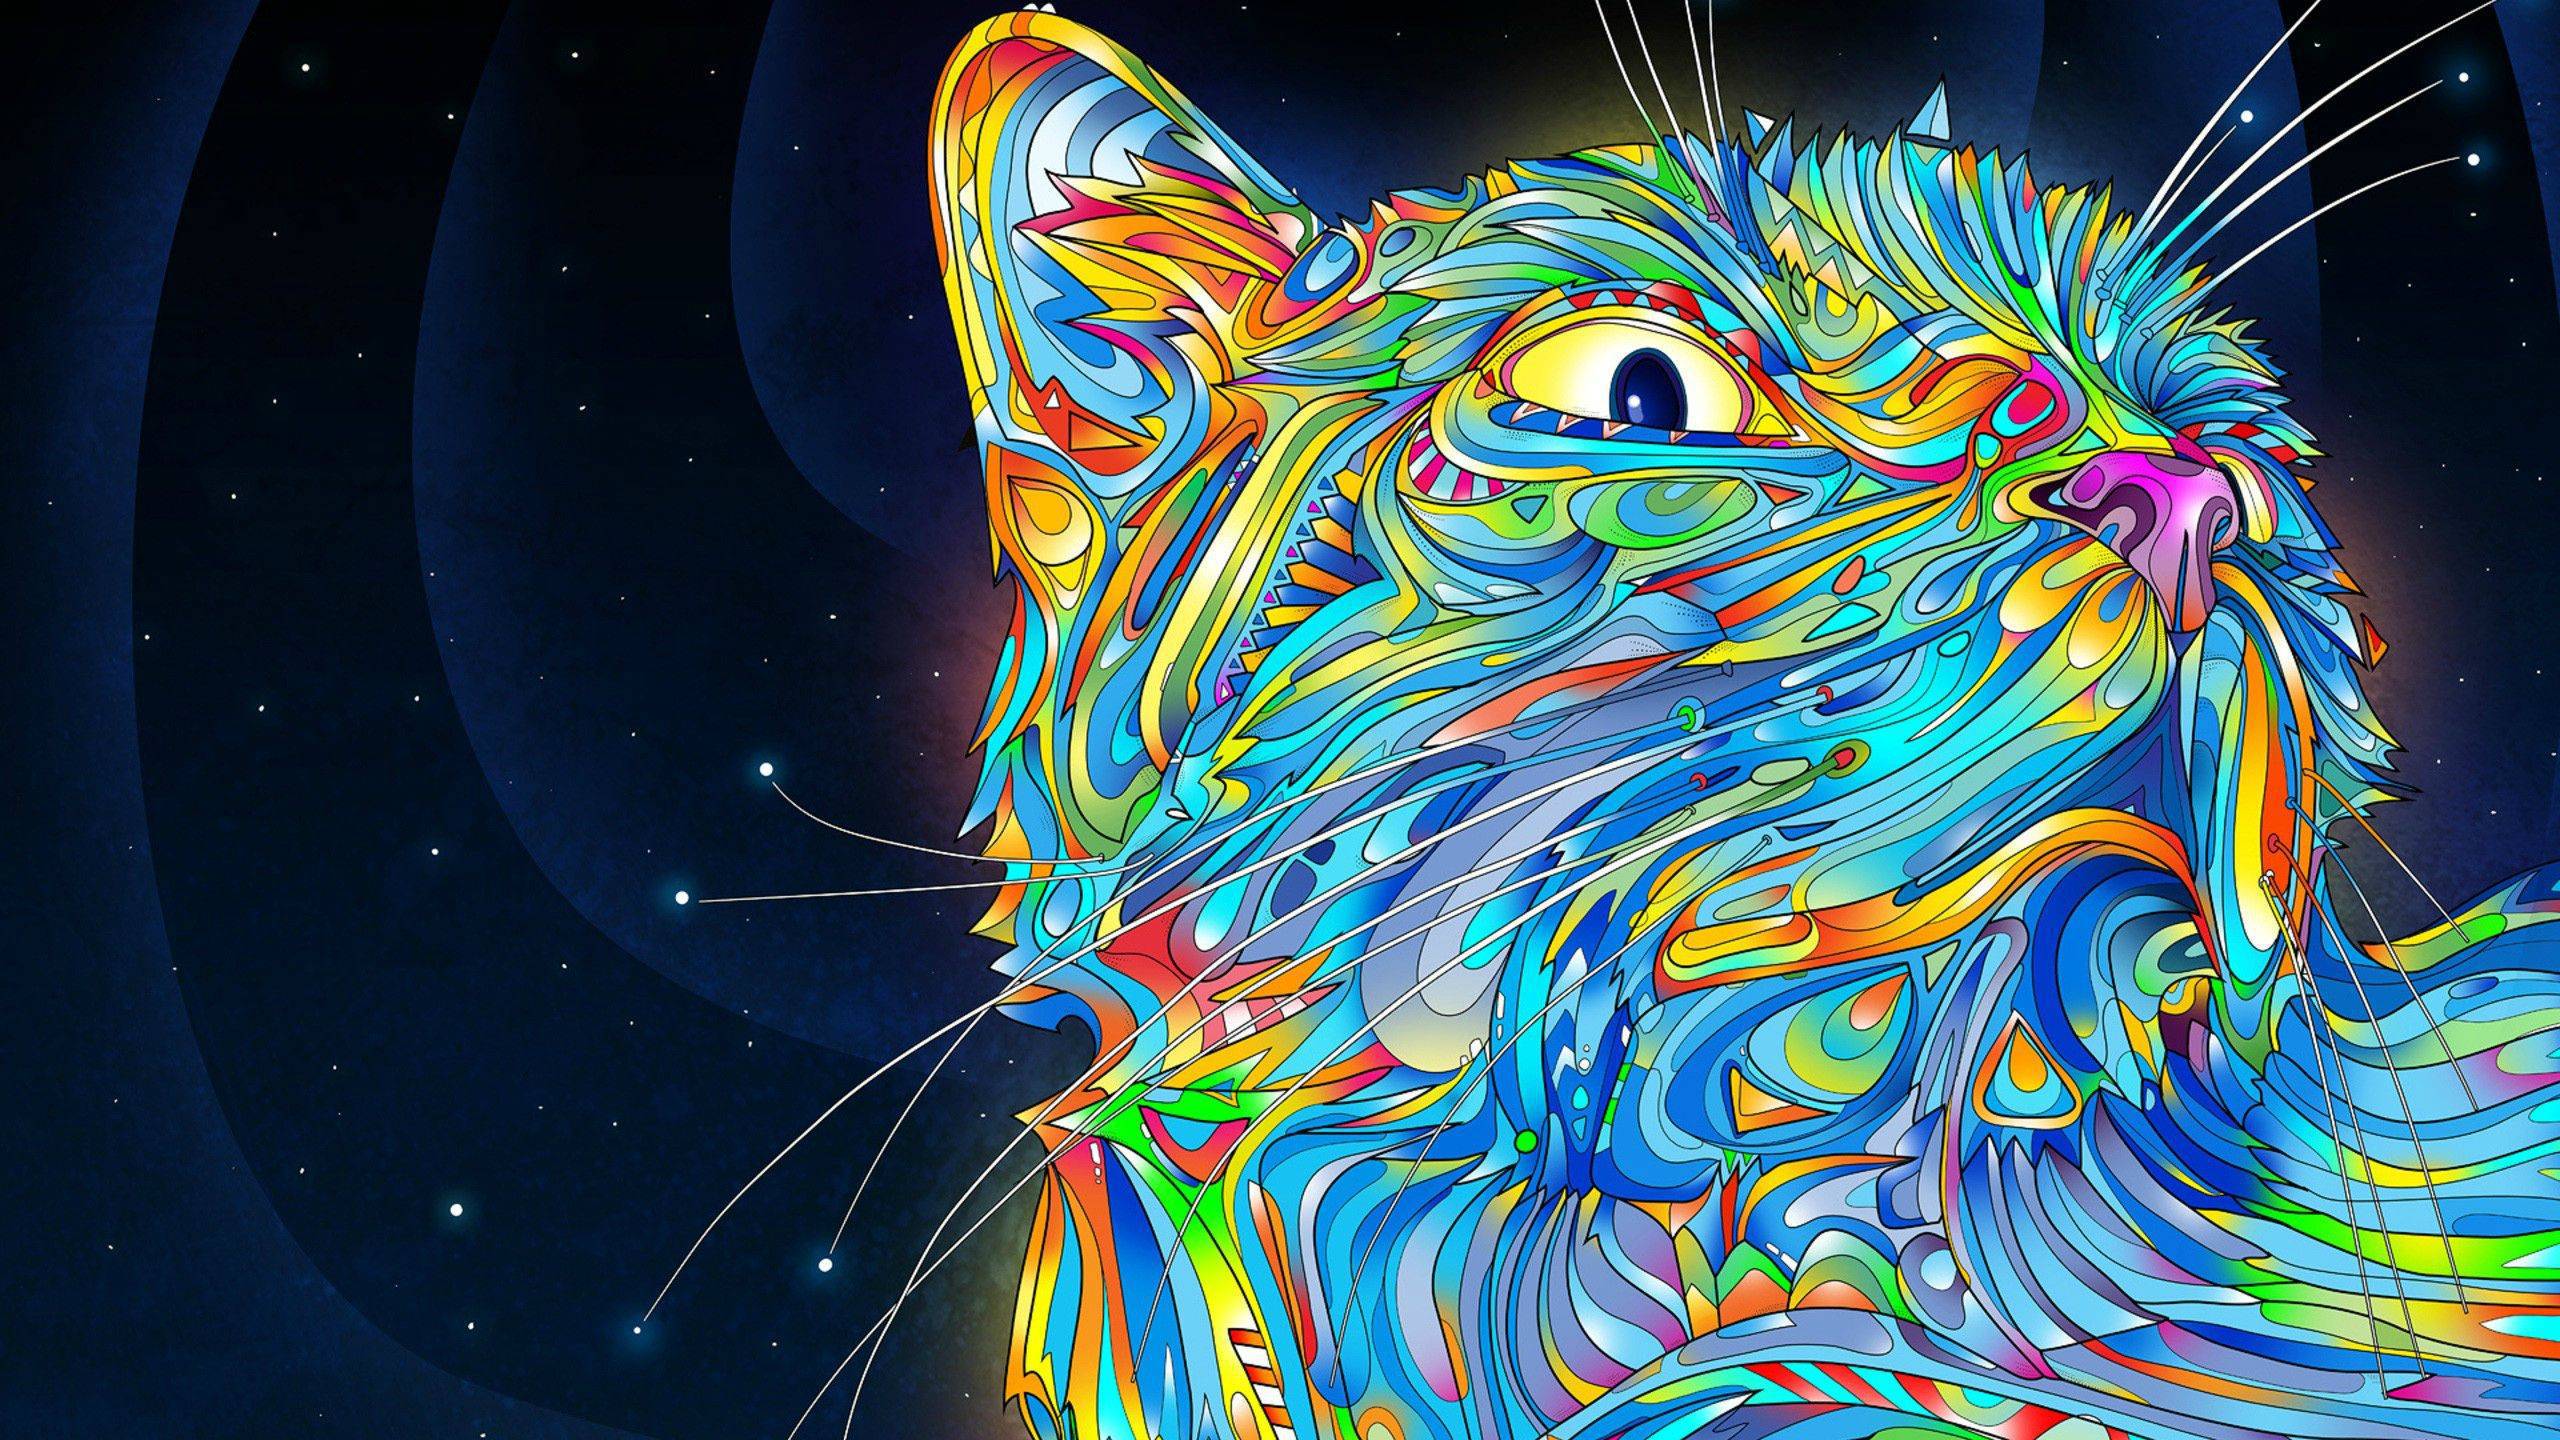 Tải xuống những hình nền WQHD nghệ thuật độc đáo cho điện thoại của bạn, được trang trí bởi chú mèo trippy cực đáng yêu. Với nhiều kiểu dáng và màu sắc khác nhau, mỗi lựa chọn đều vô cùng ấn tượng. Đến và tải xuống ngay để tìm được hình nền hoàn hảo cho điện thoại yêu quý của bạn.